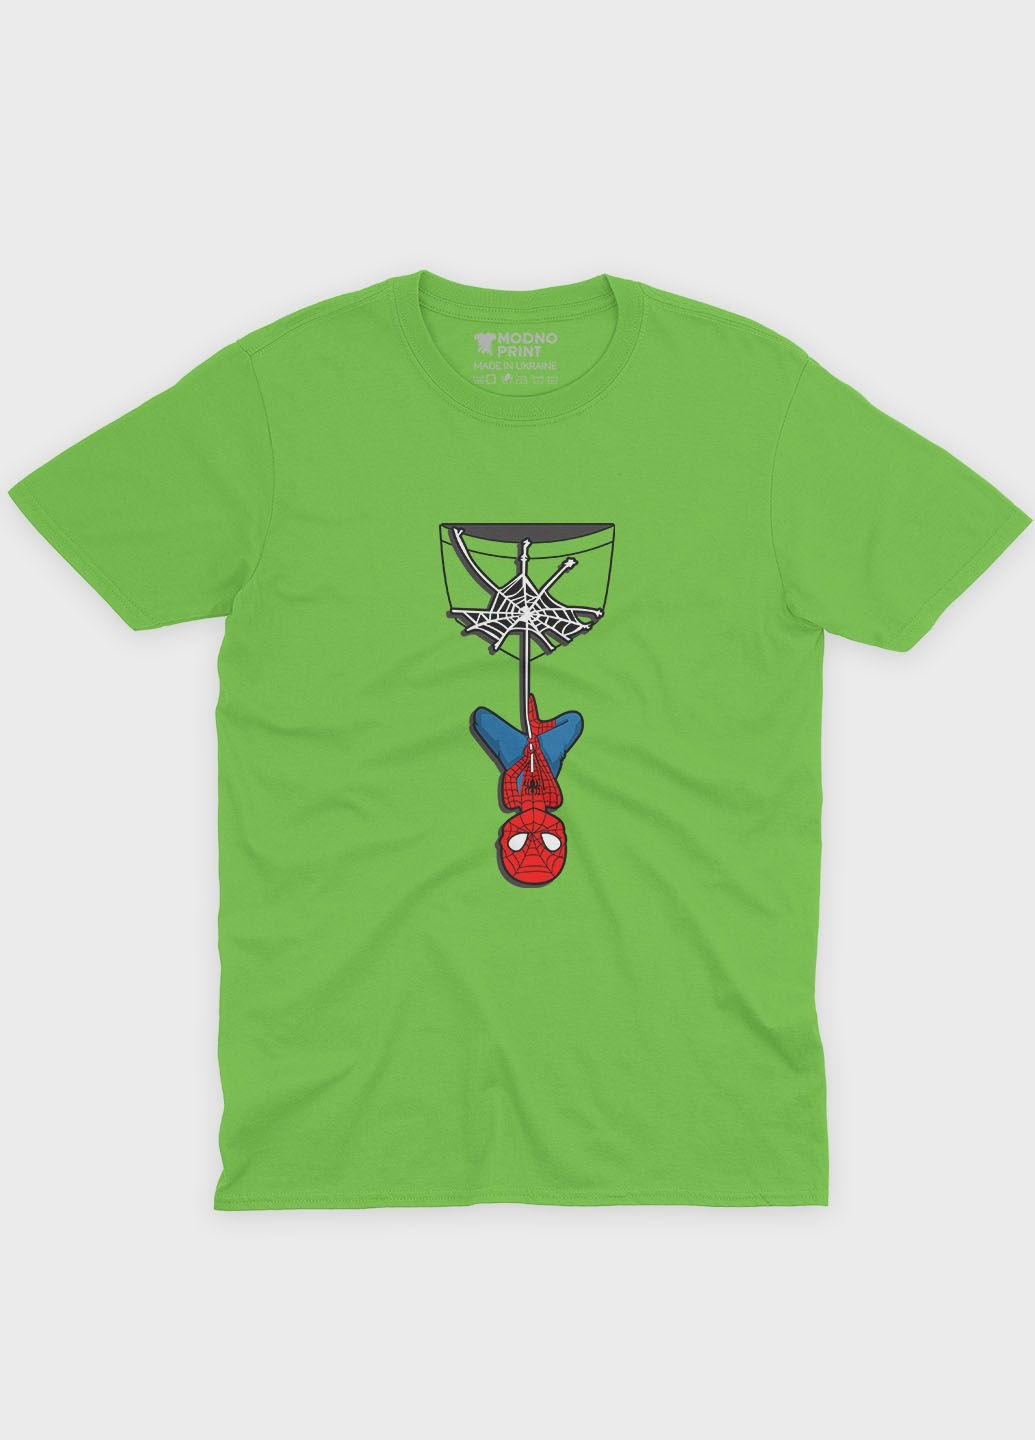 Салатова демісезонна футболка для хлопчика з принтом супергероя - людина-павук (ts001-1-kiw-006-014-039-b) Modno